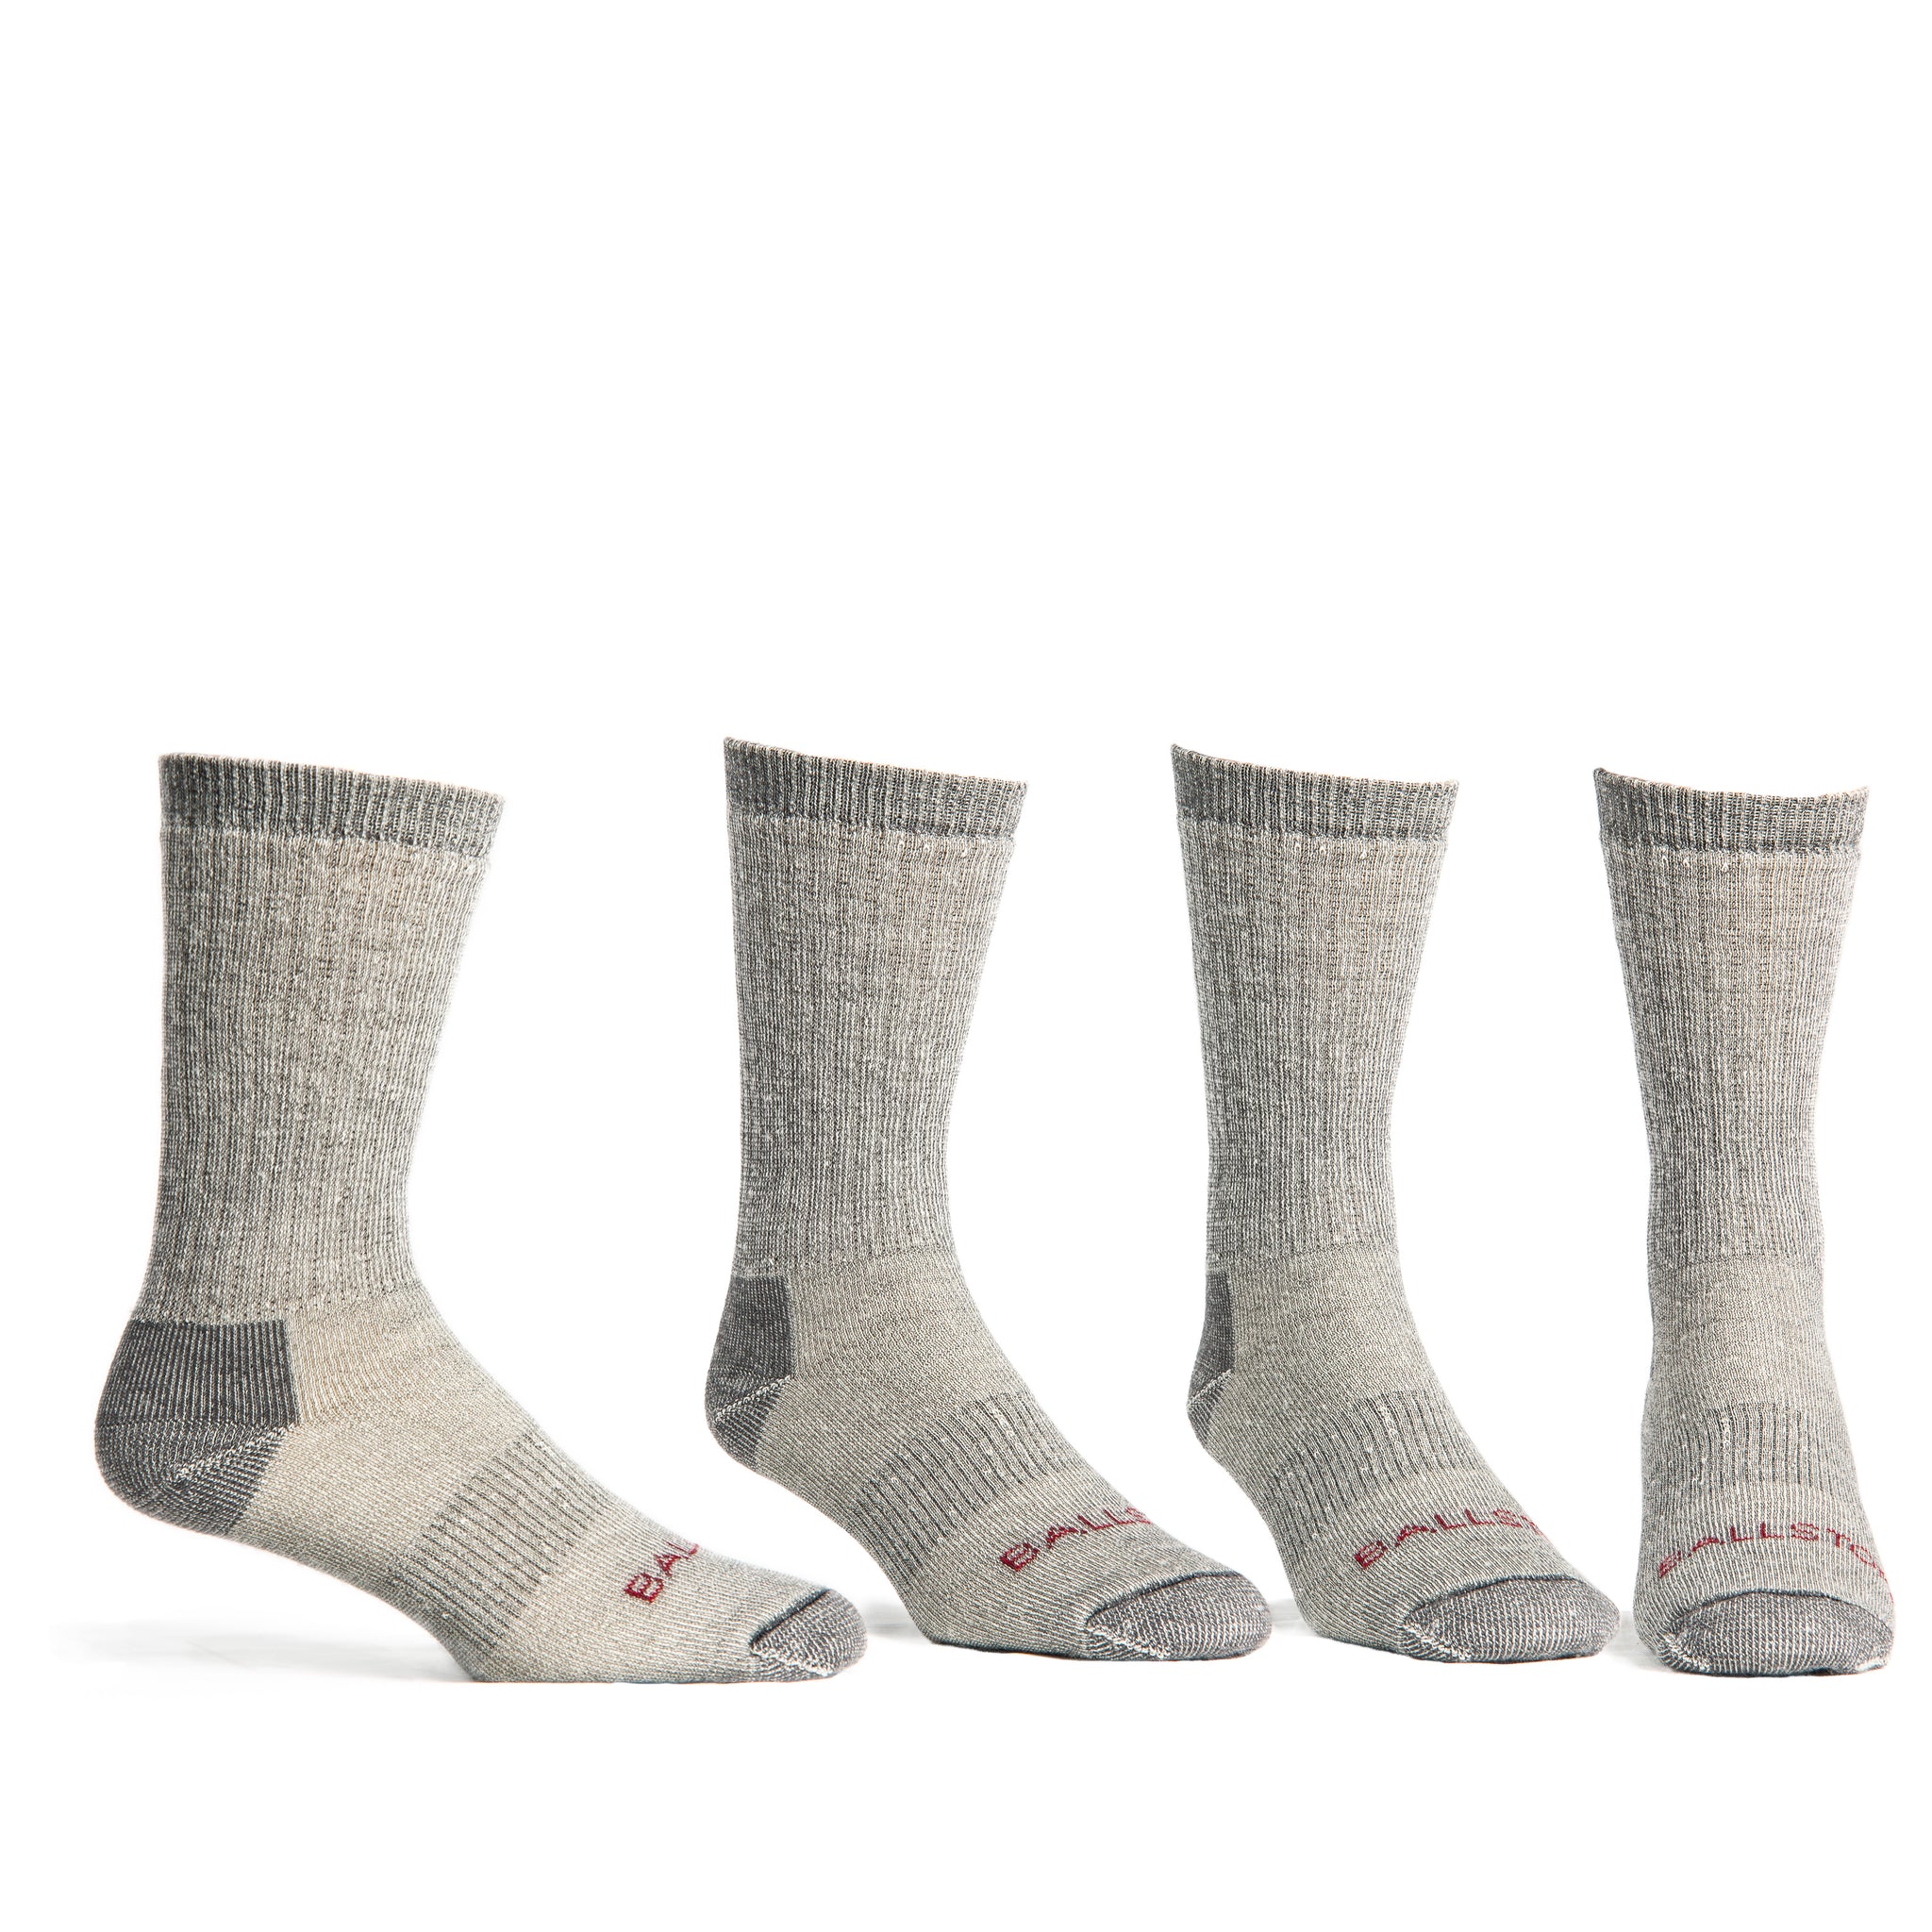 Ballston Lightweight 81% Merino Wool All Season Crew Hiking Socks - 4 Pairs  for Men and Women